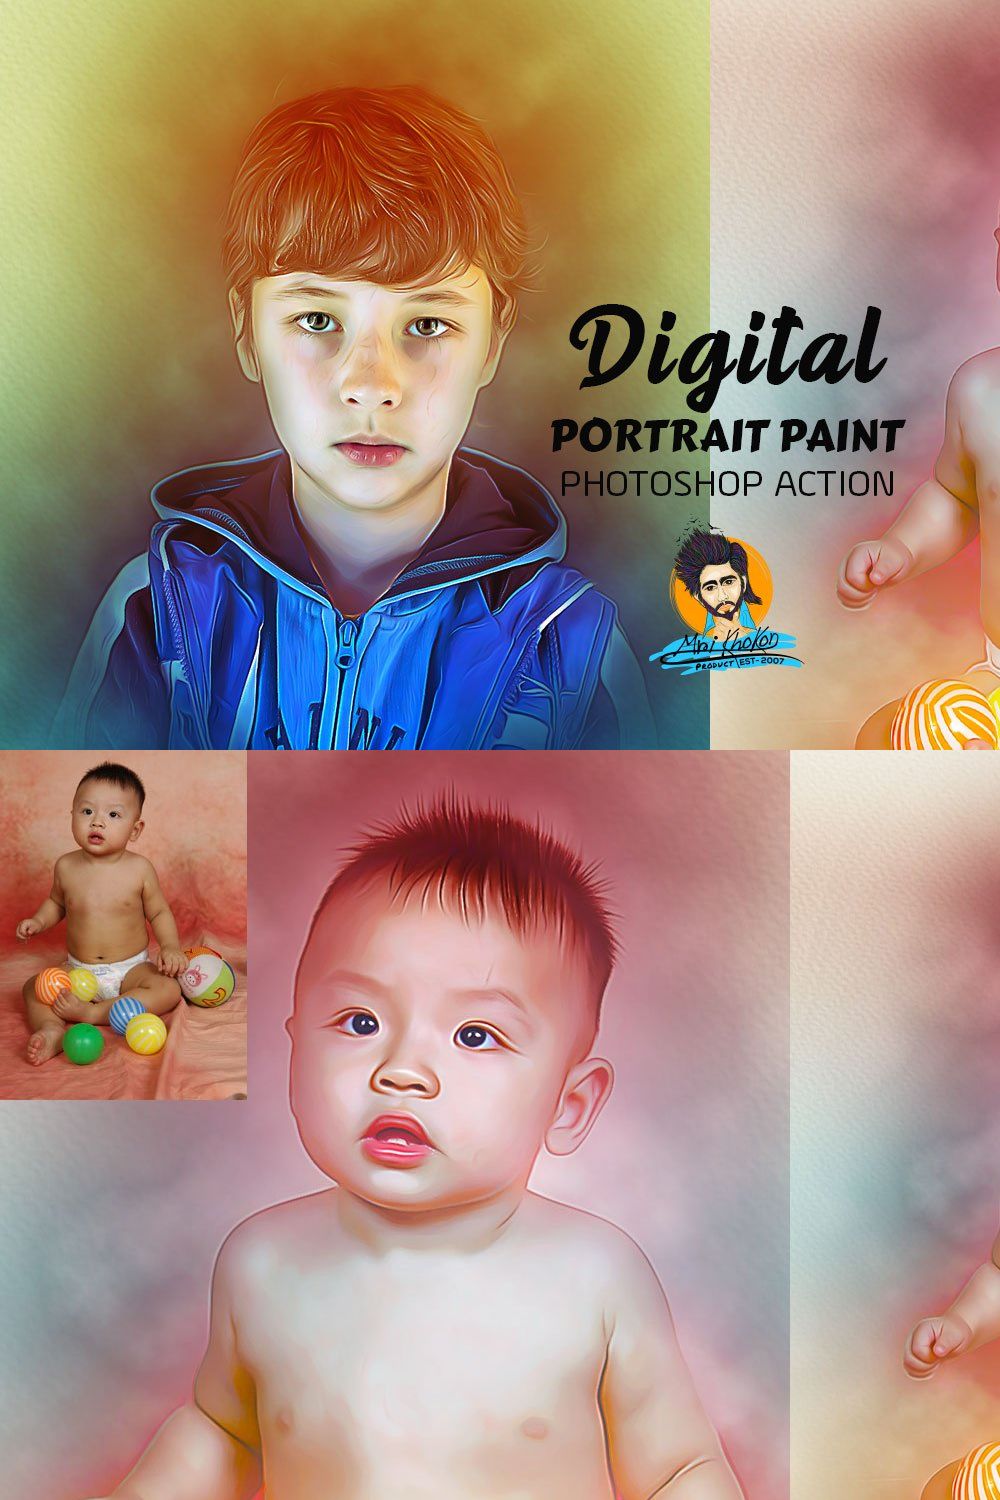 Digital Portrait Paint pinterest preview image.